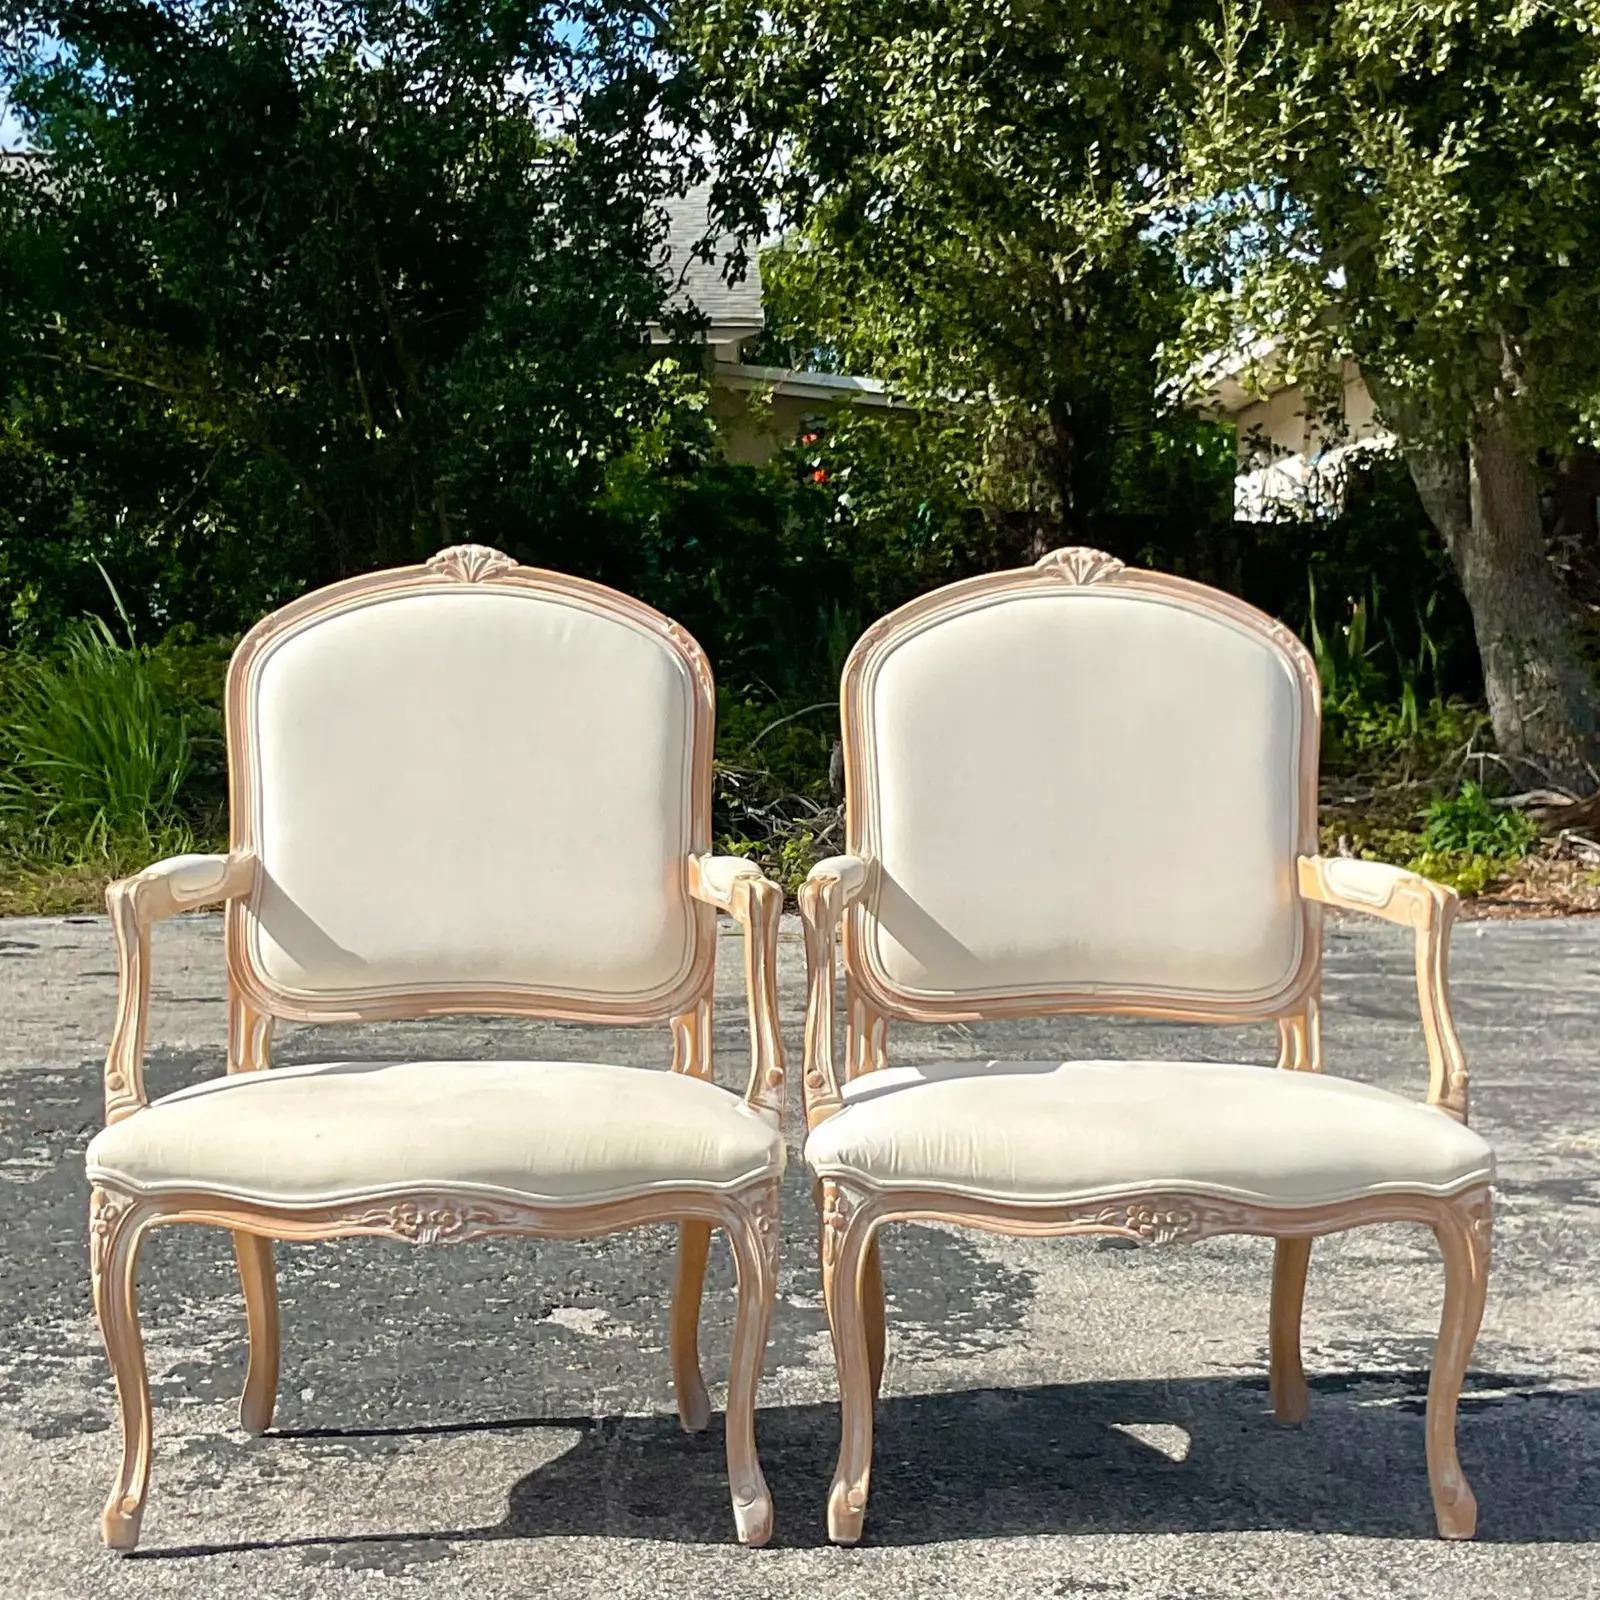 Ein fabelhaftes Paar Vintage Regency Bergere Stühle. Schöne handgeschnitzte Details an der klassischen Form. Erworben aus einem Nachlass in Palm Beach.